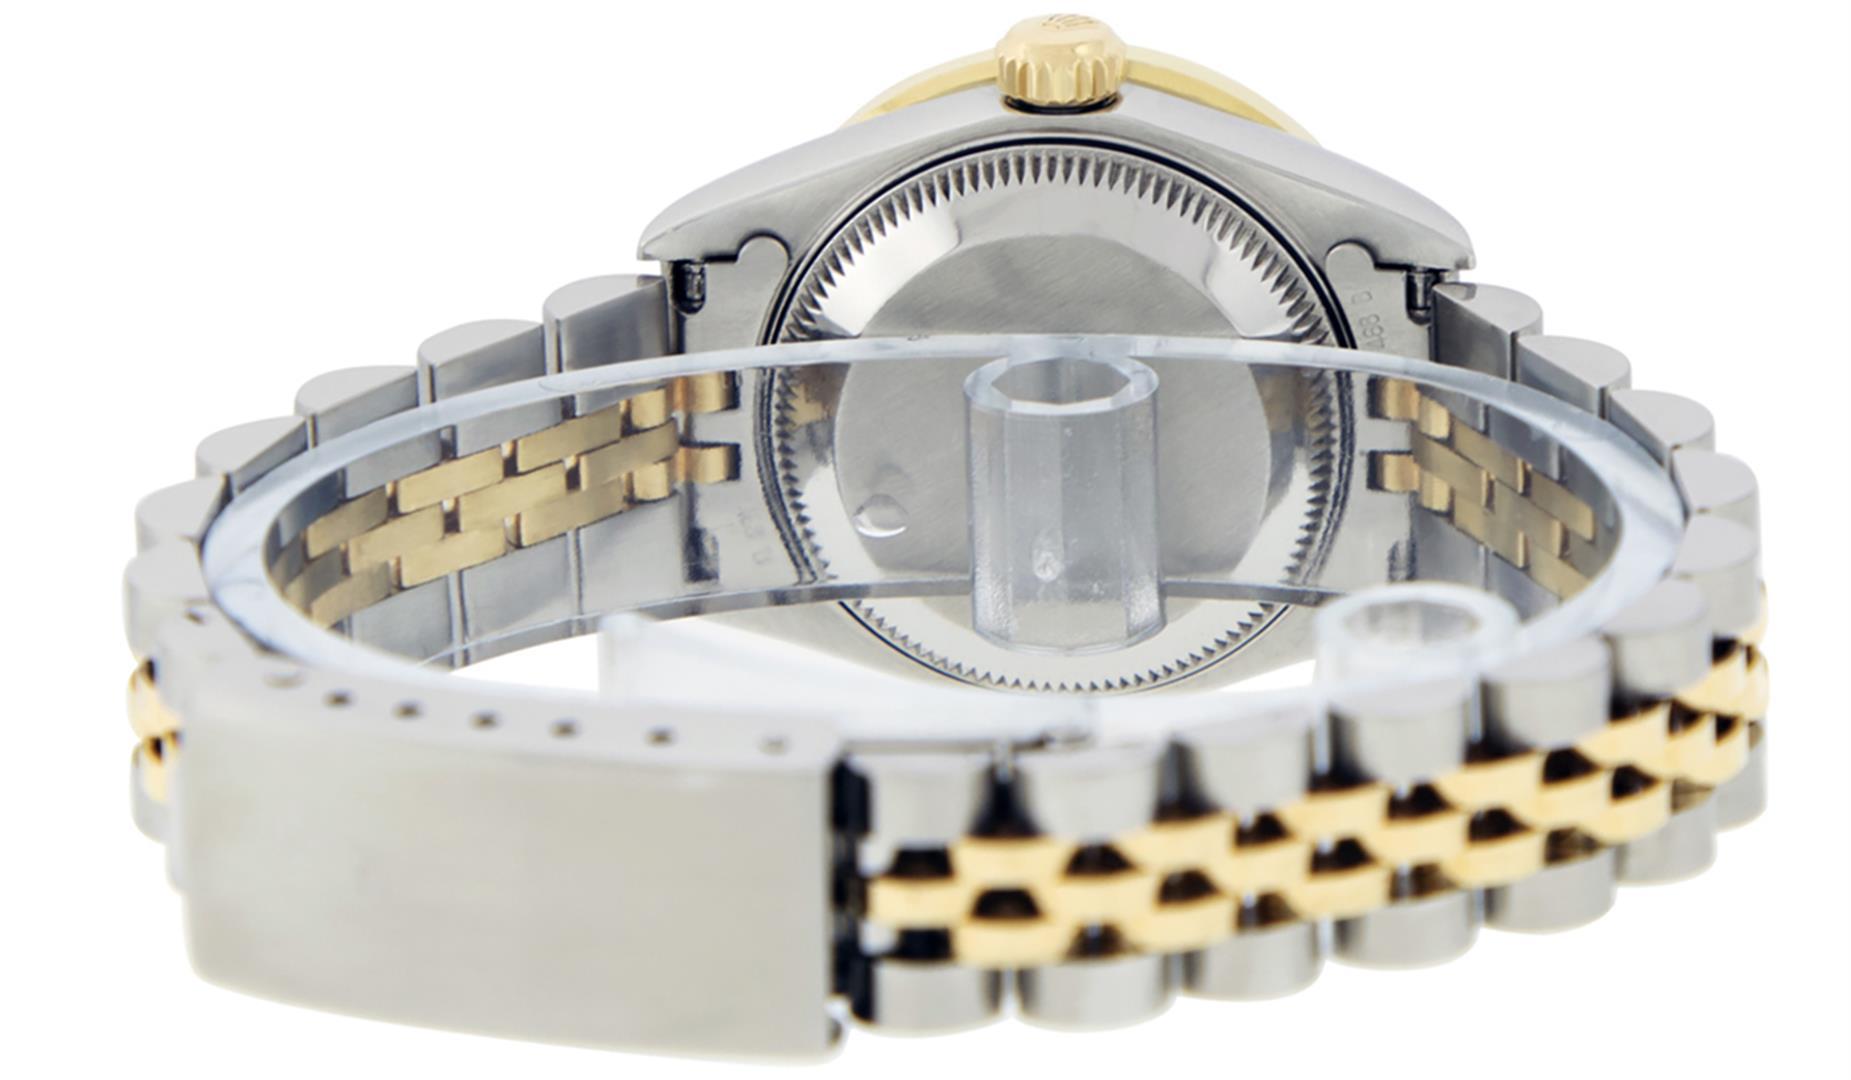 Rolex Ladies Quickset 2 Tone Champagne Channel Diamond Datejust Wristwatch